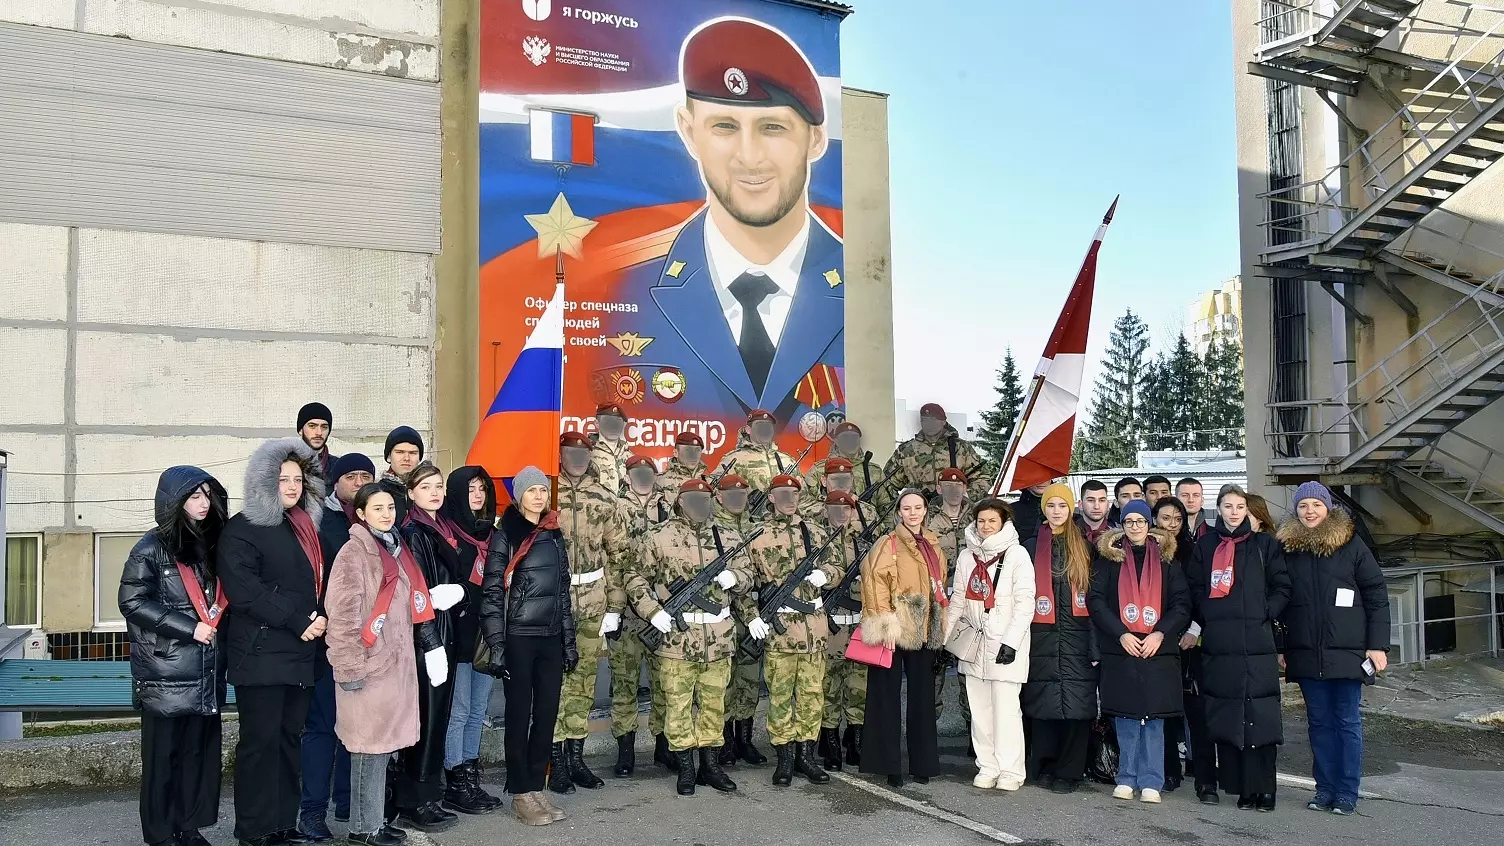 Теперь на здании корпуса вуза появился мурал с портретом Потапова и надписью «Я горжусь».